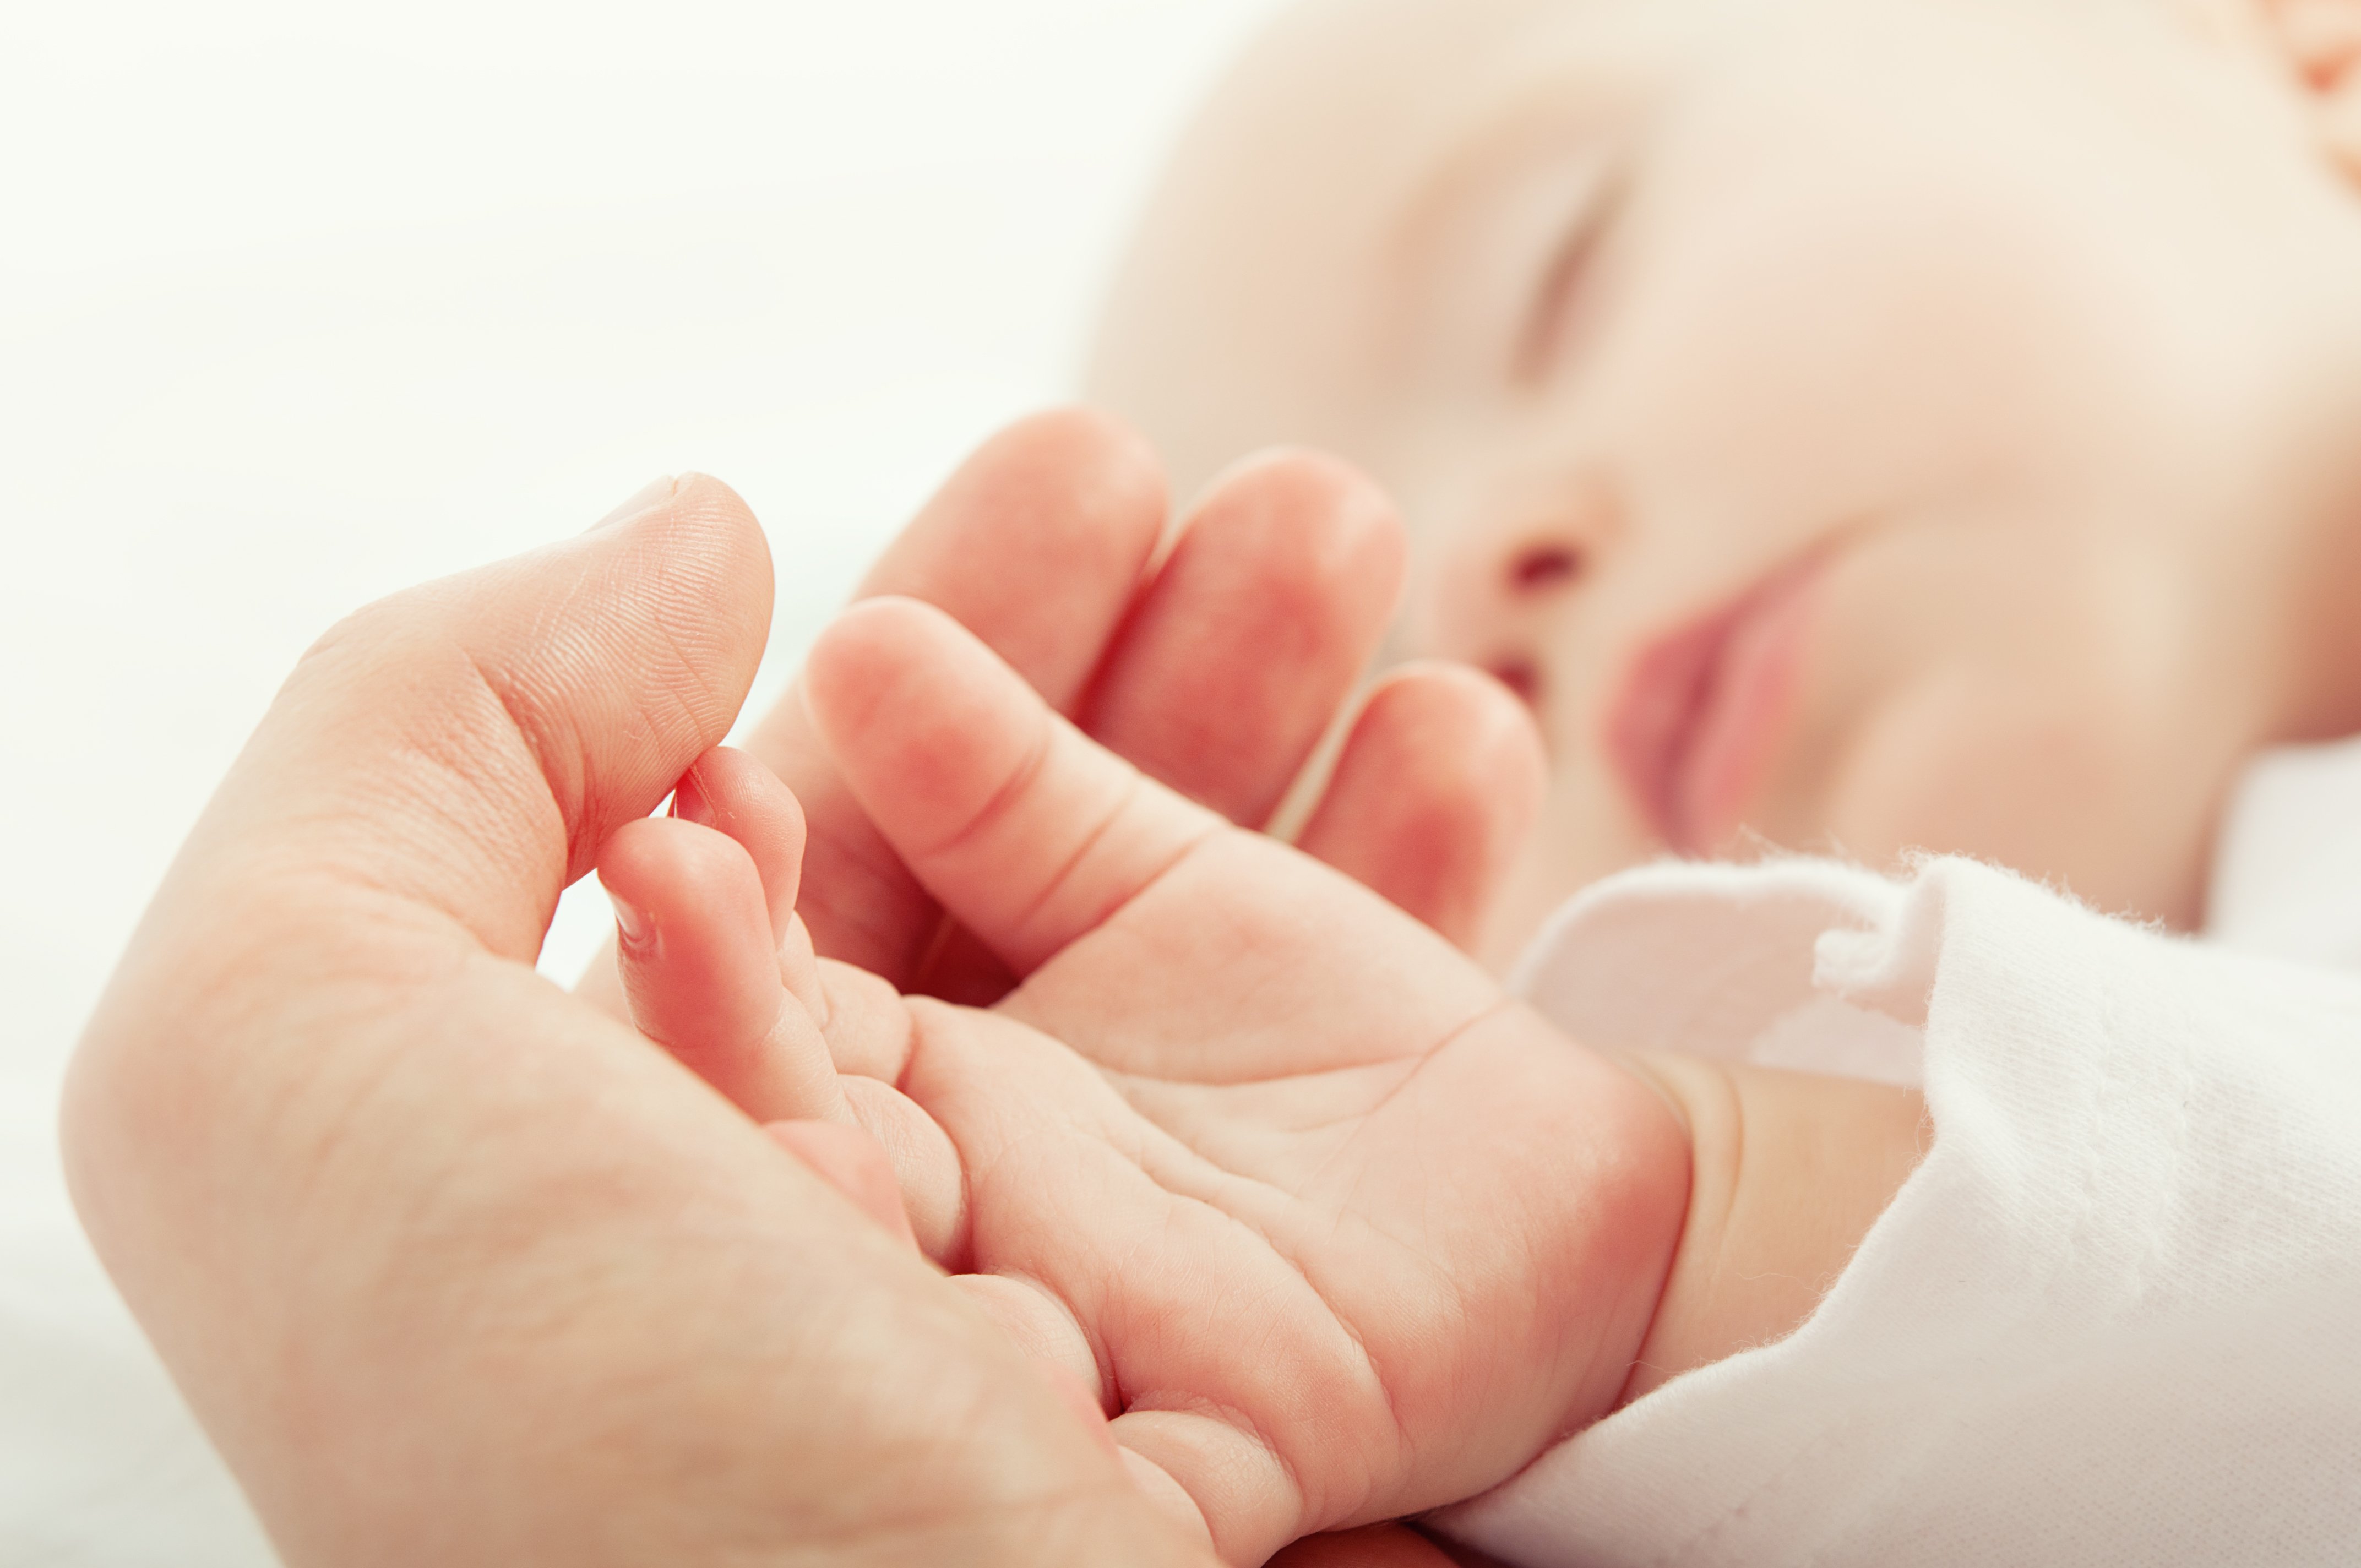 Baby hält Hand von Elternteil | Quelle: Shutterstock